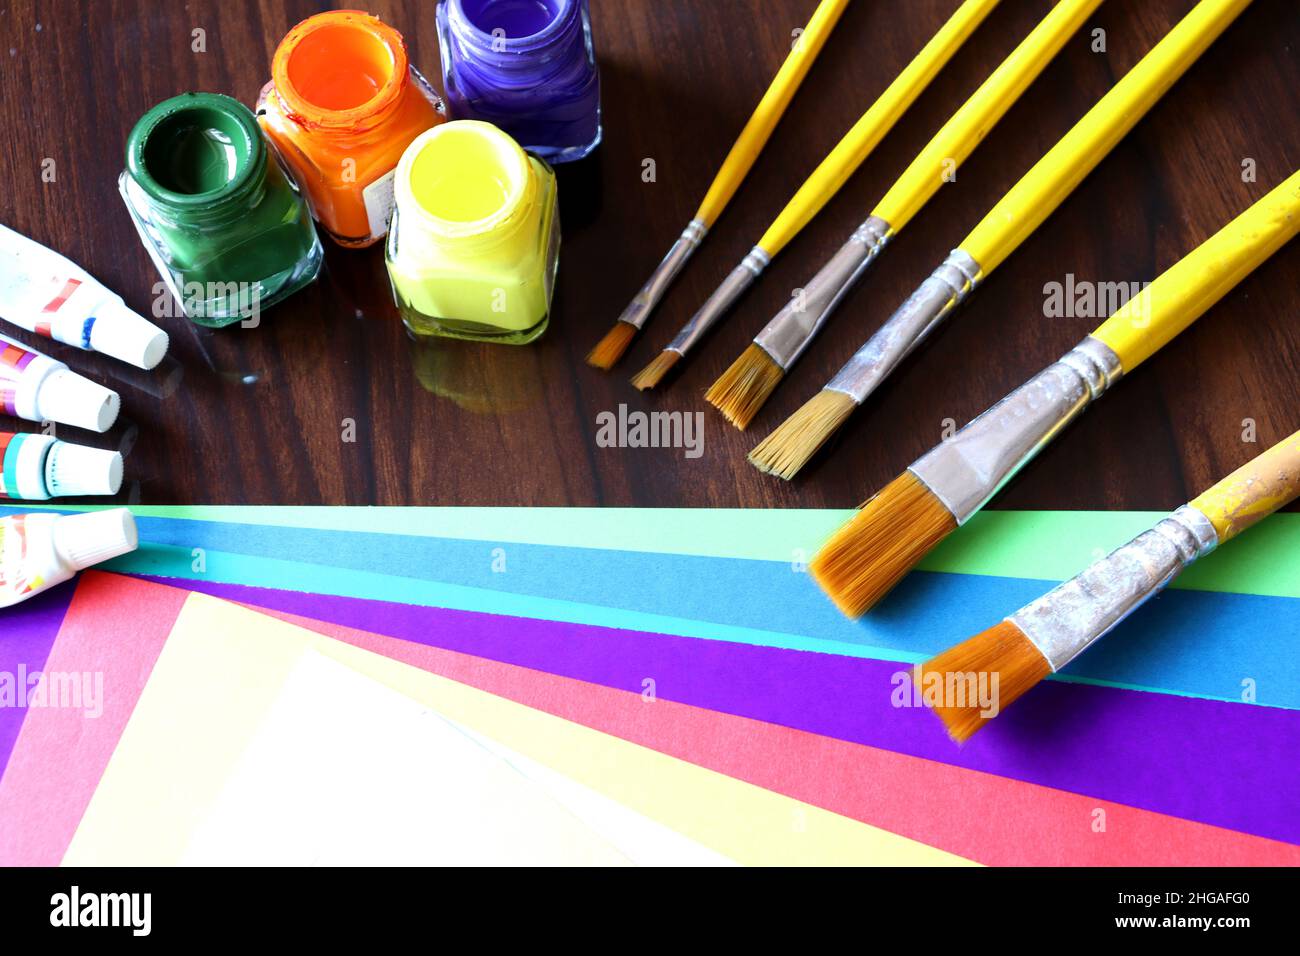 Matériel d'art et d'artisanat, travail d'art, papier couleur, tube de couleur et brosse sur une table, travail étudiant à l'école Banque D'Images